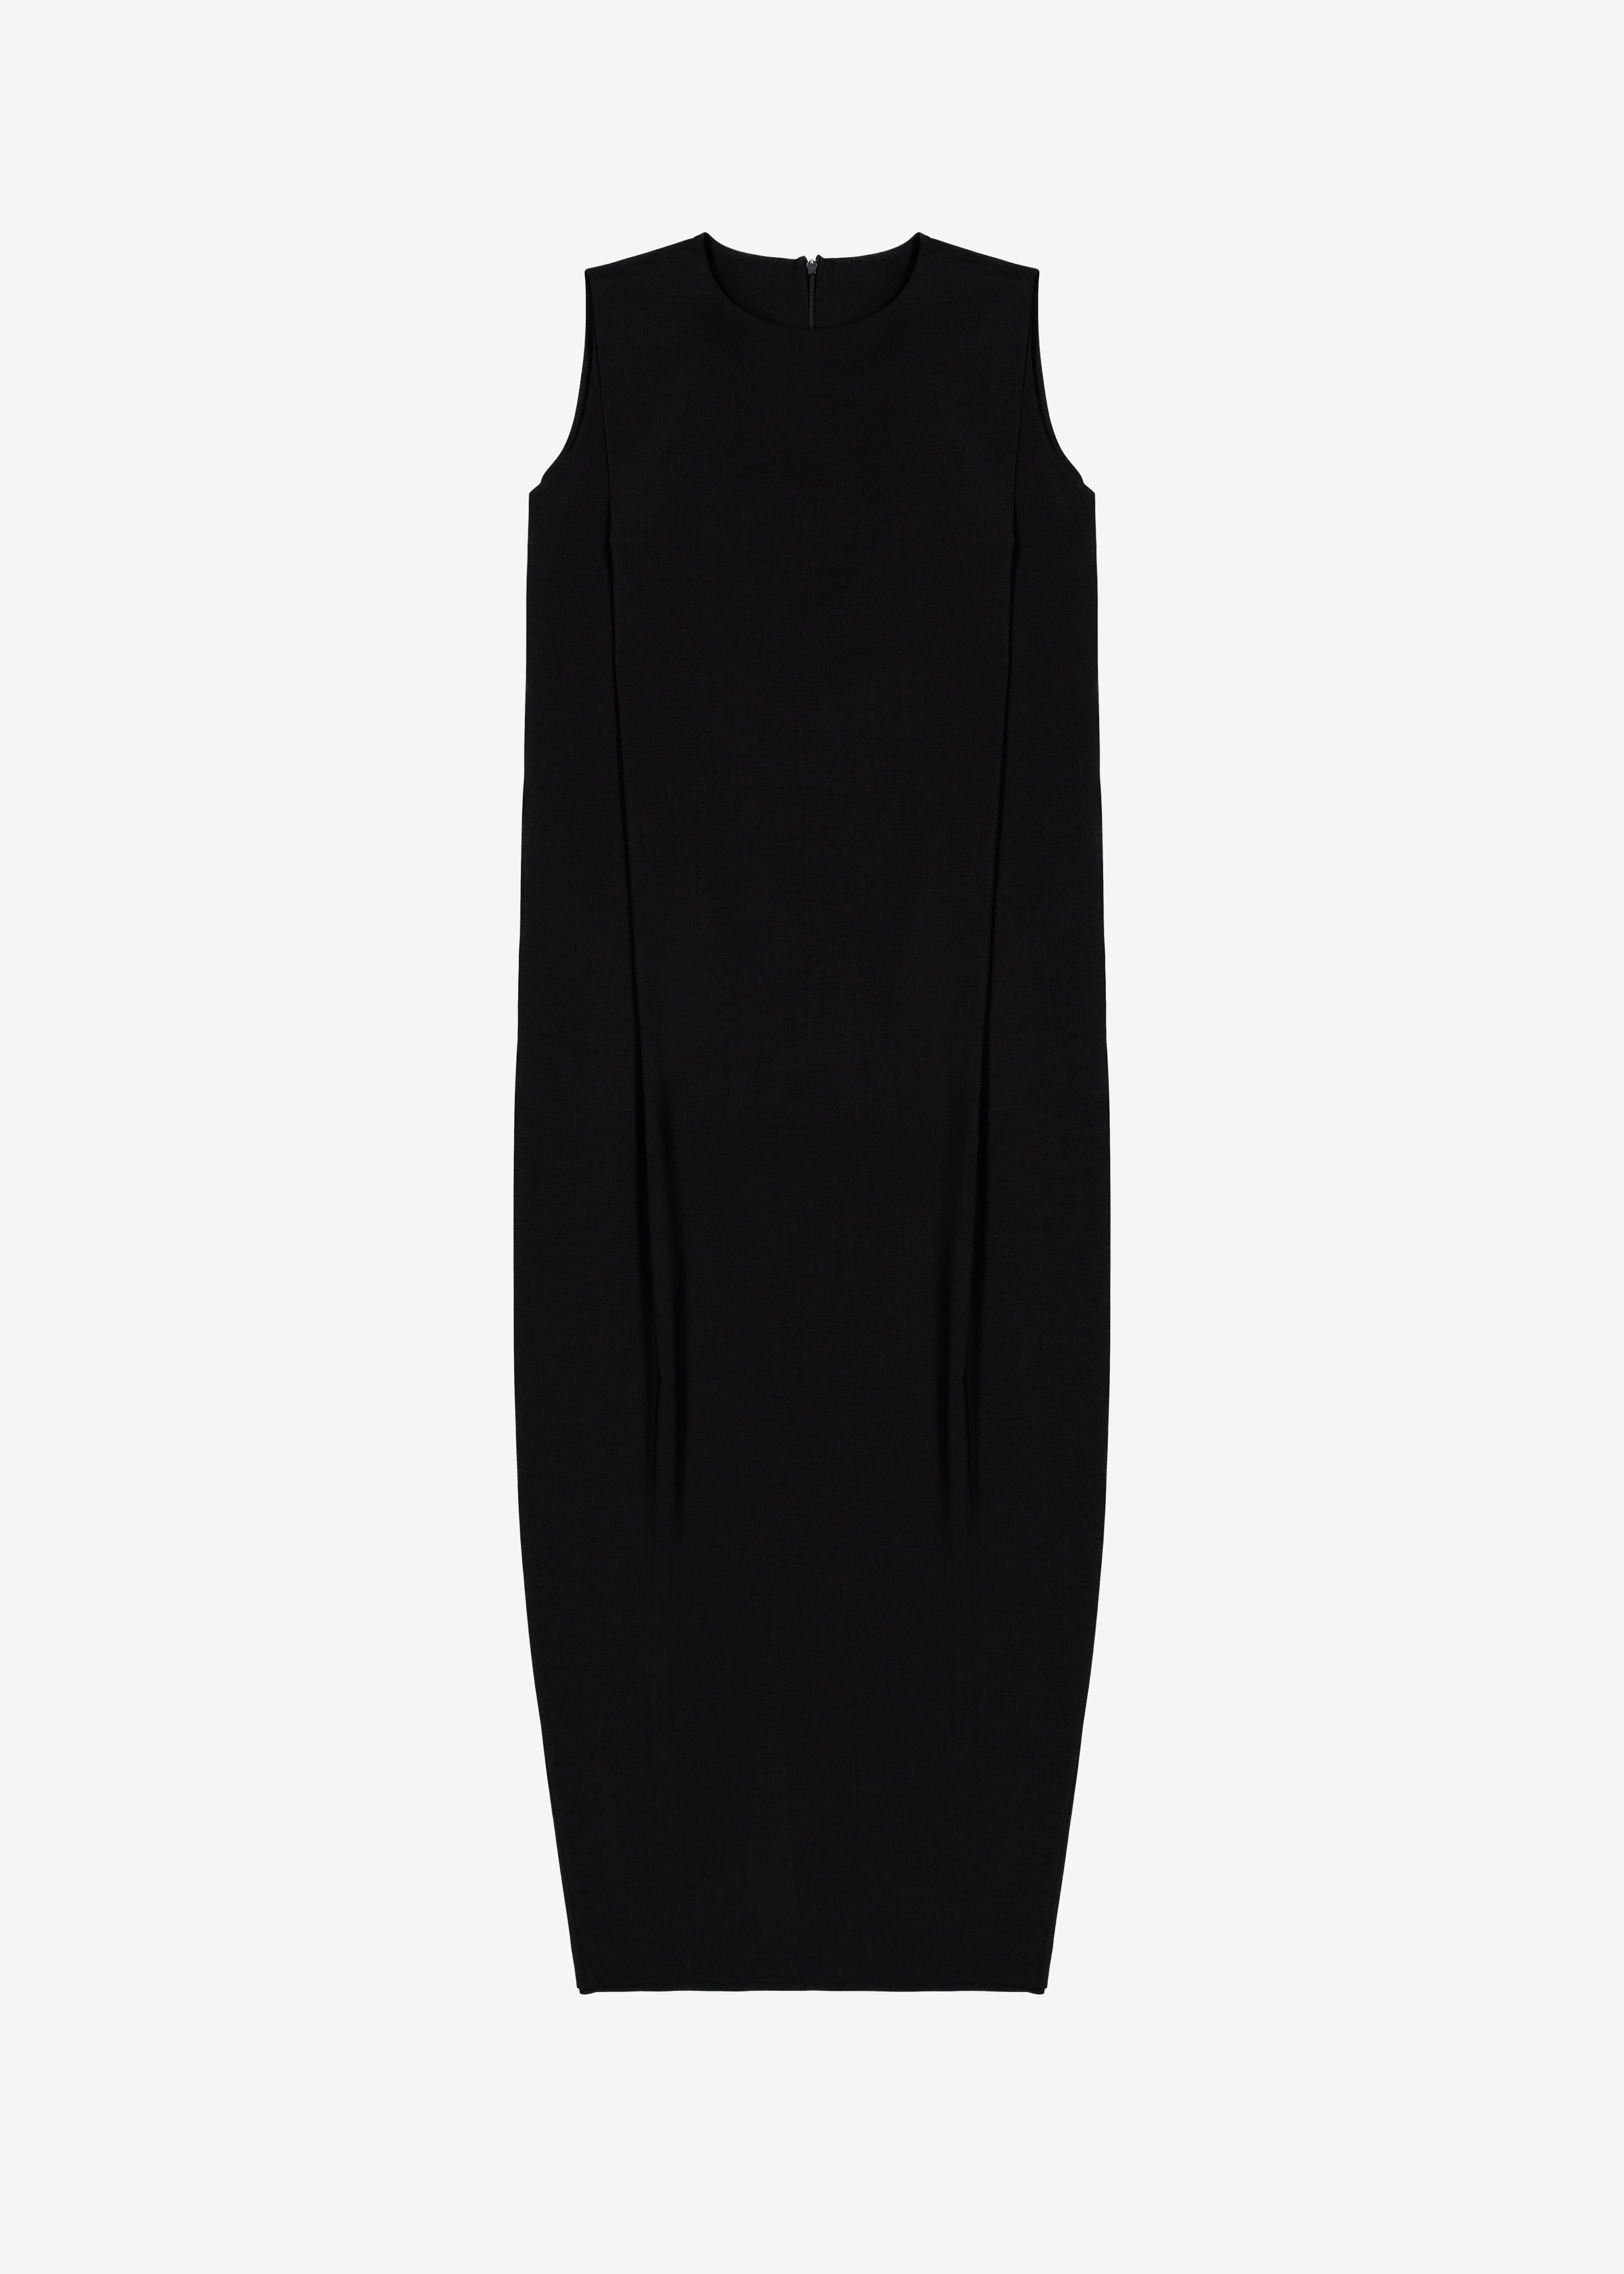 Eryn Sleeveless Pintuck Dress - Black - 6